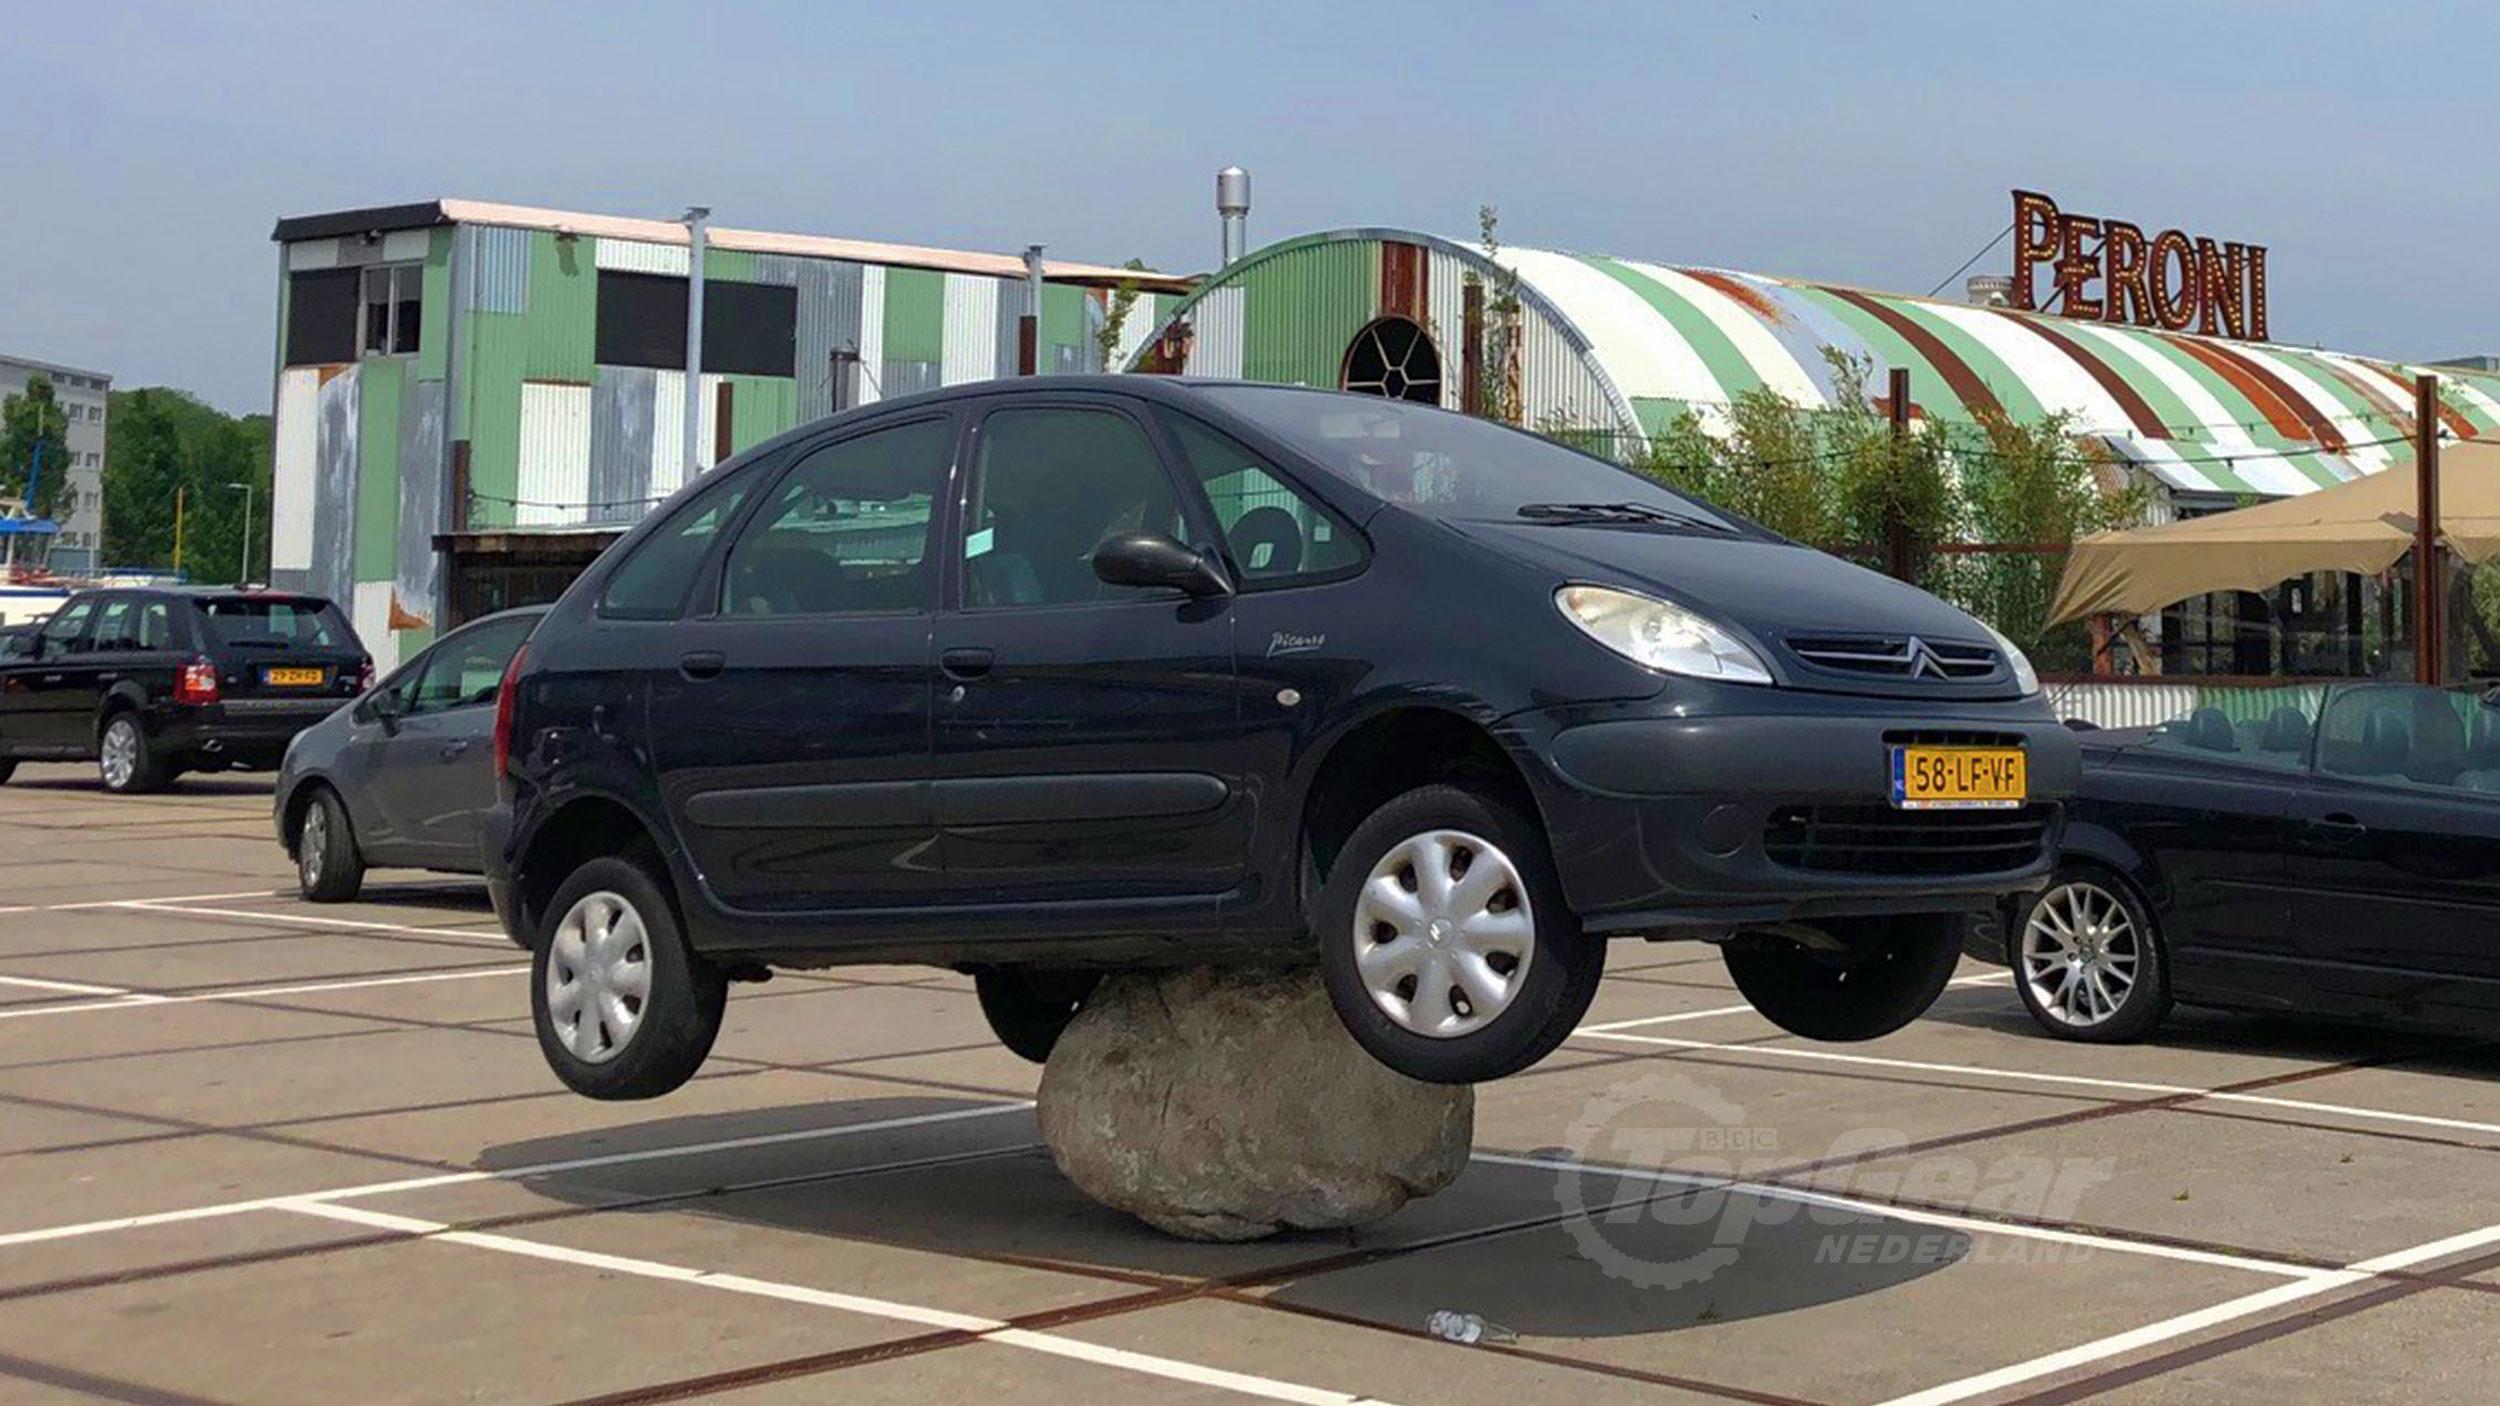 Maak het zwaar Premier landelijk Auto parkeert op steen in Amsterdam - TopGear Nederland